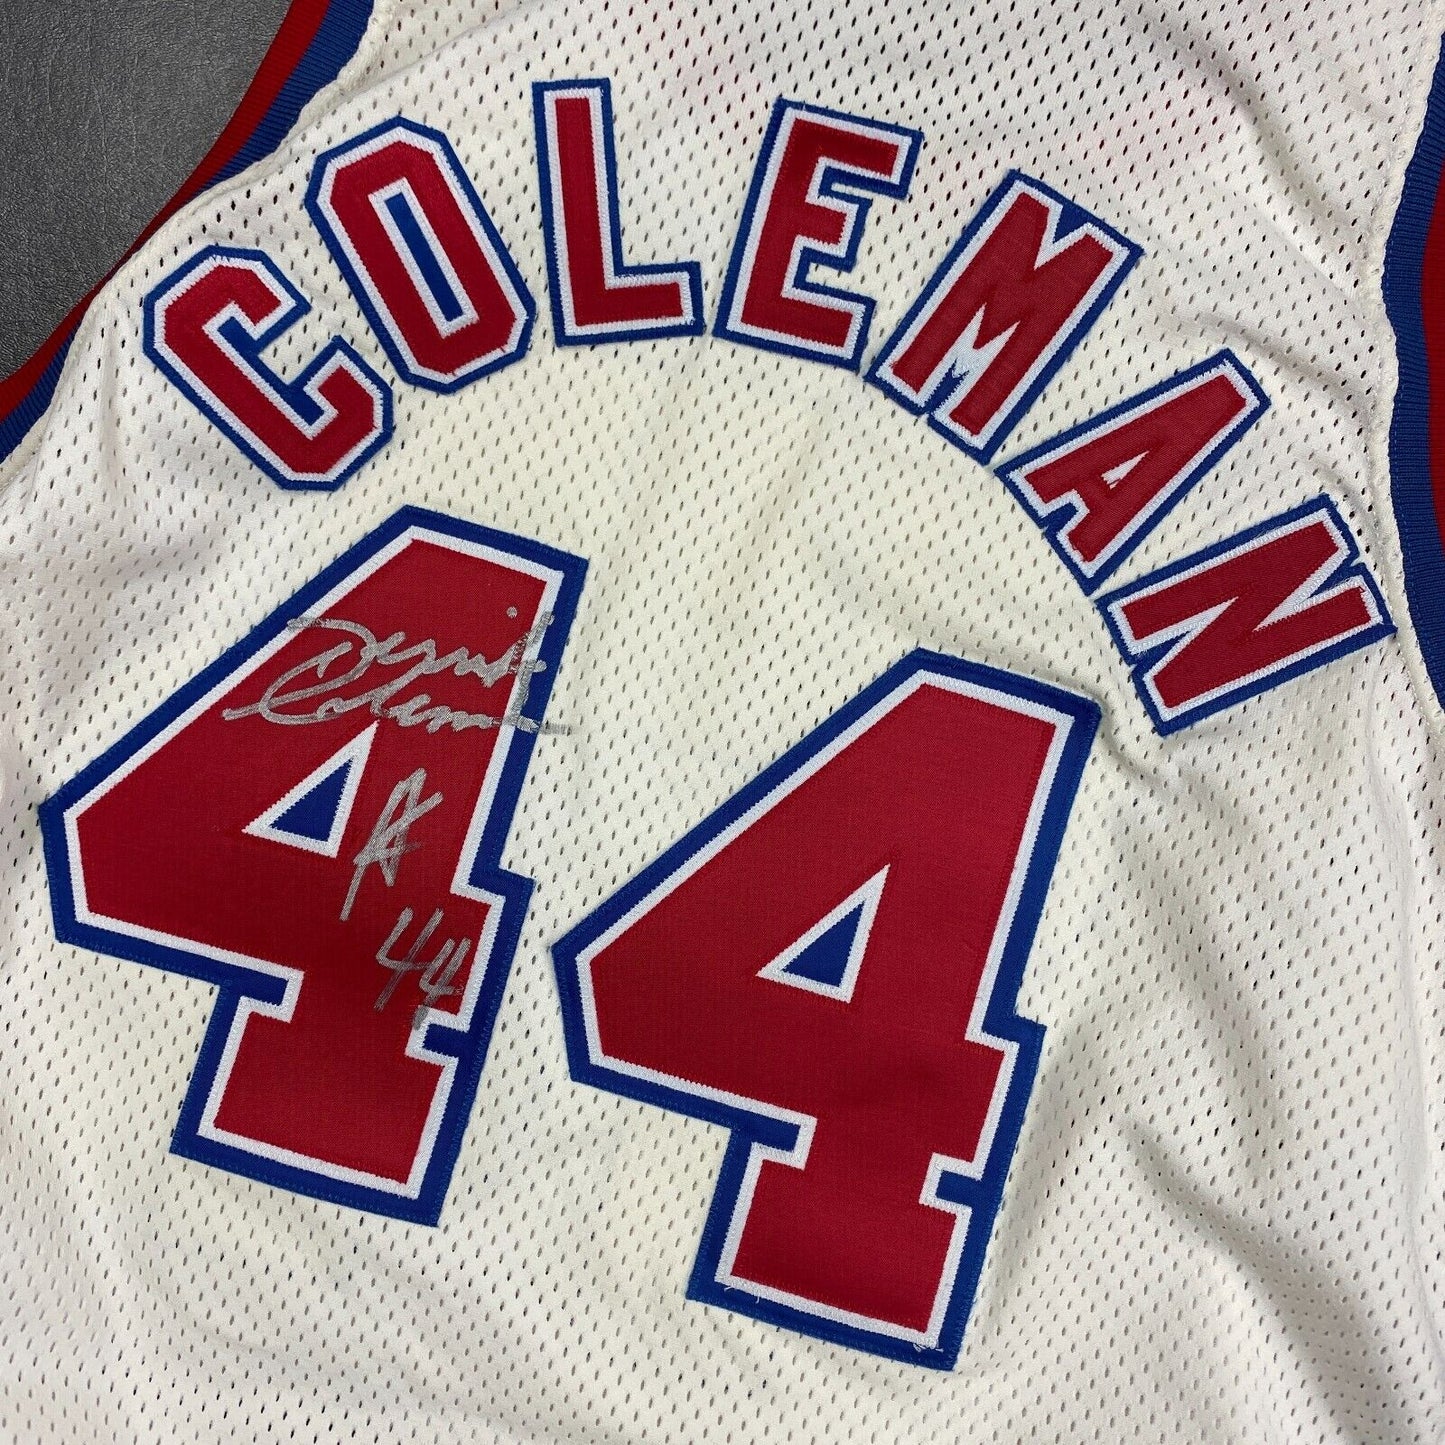 100% Authentic Derrick Coleman Vintage Champion 1991 Nets Signed Pro Cut Jersey